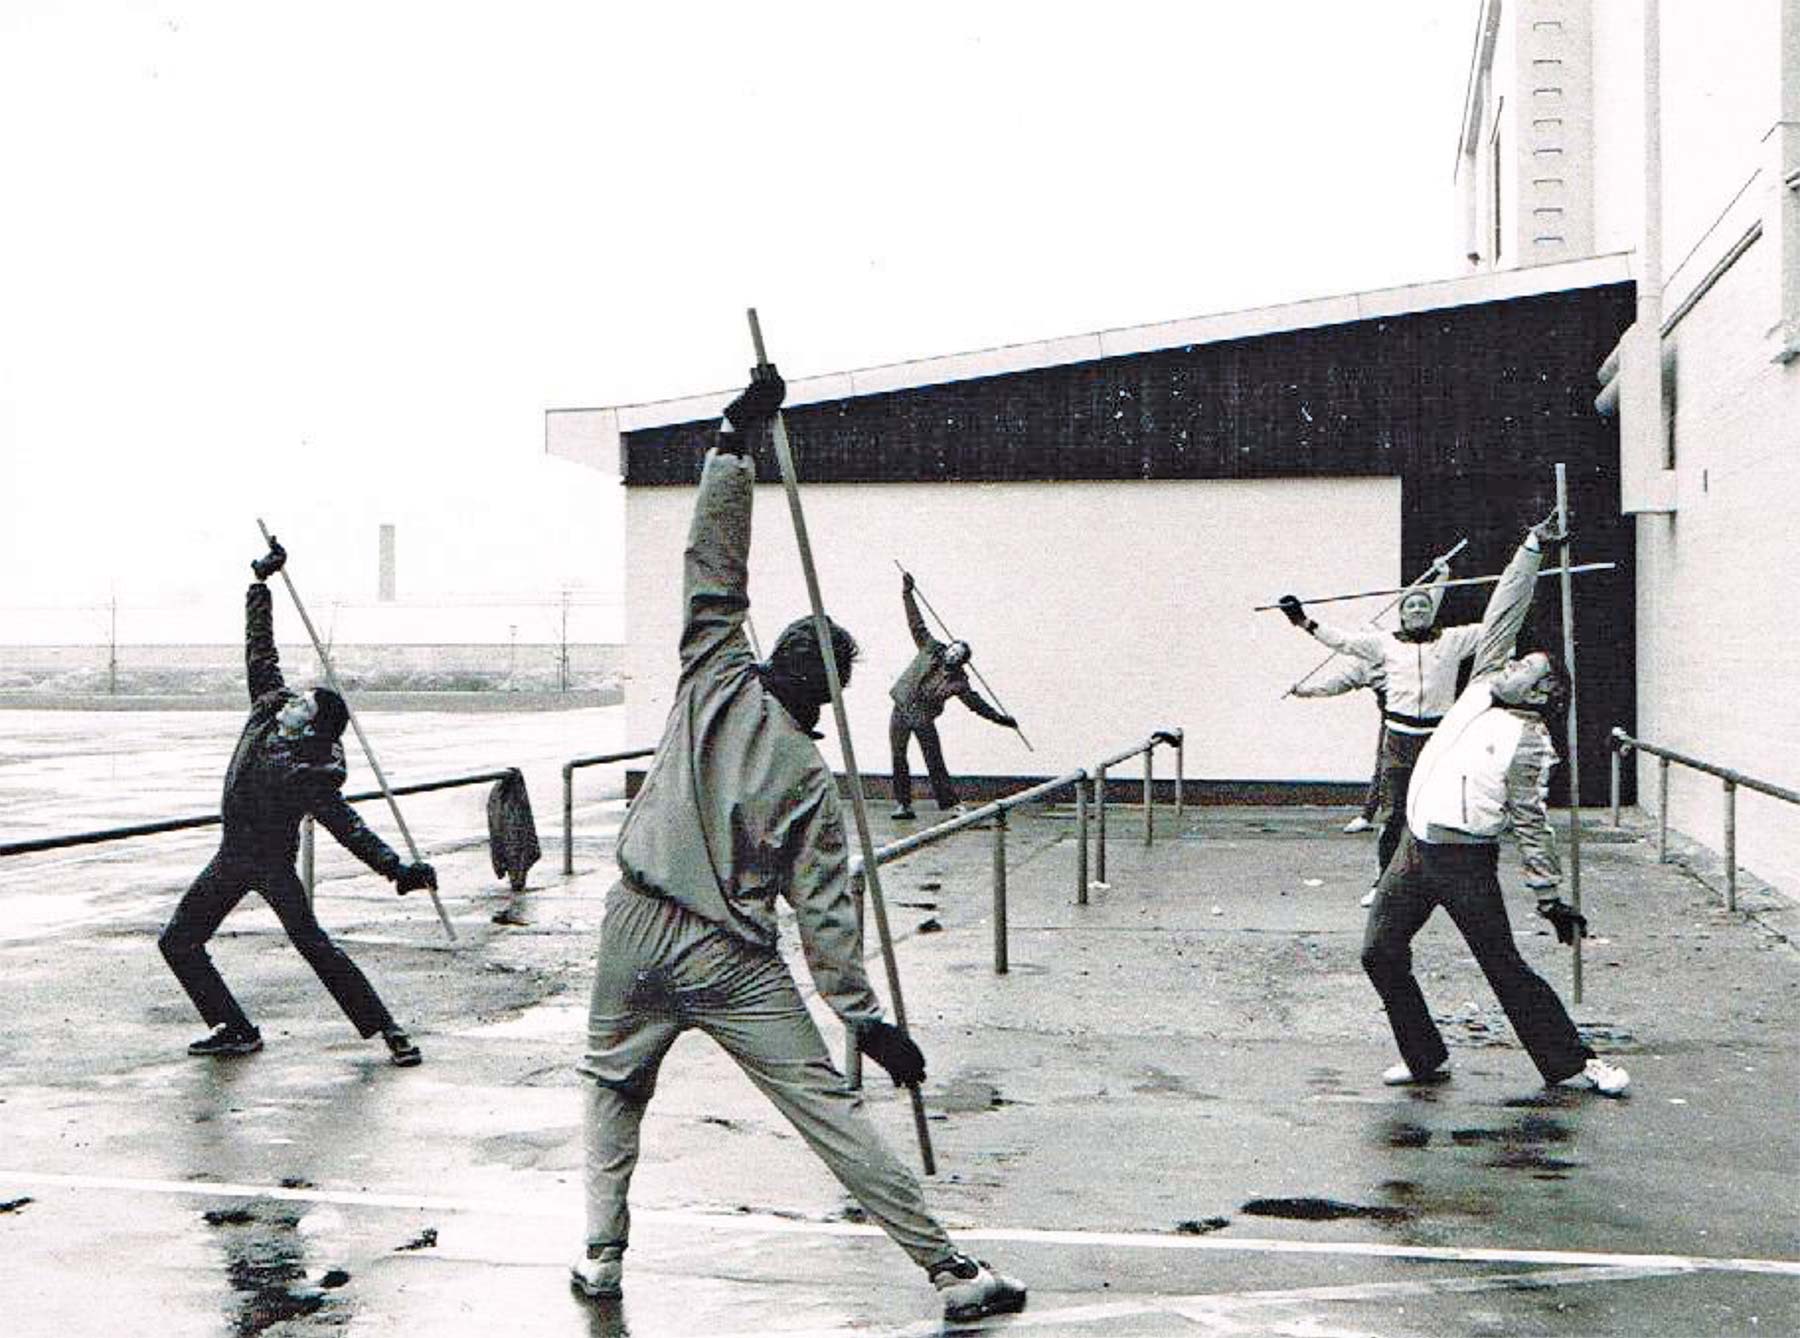 Fra 1981 trænes der udenfor ved Hollænderhallen – hvor træningen fortsat i dag praktiseres hver lørdag morgen.